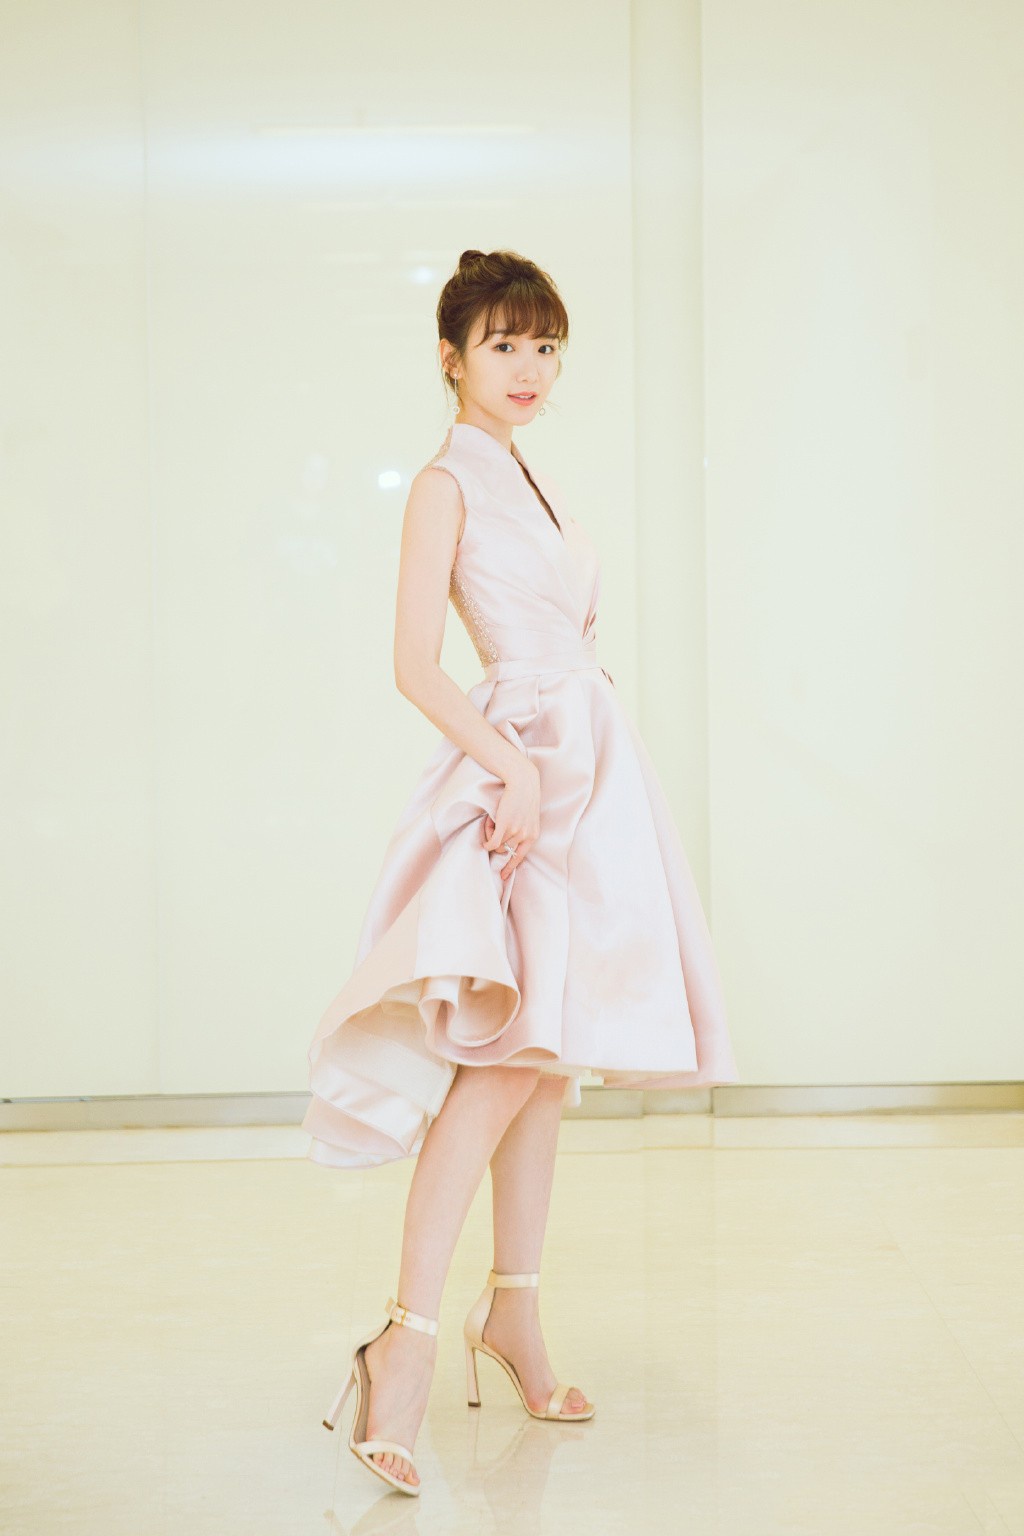 31岁毛晓彤是要逆袭了,穿粉色v领开叉长裙,配齐刘海甜美性感